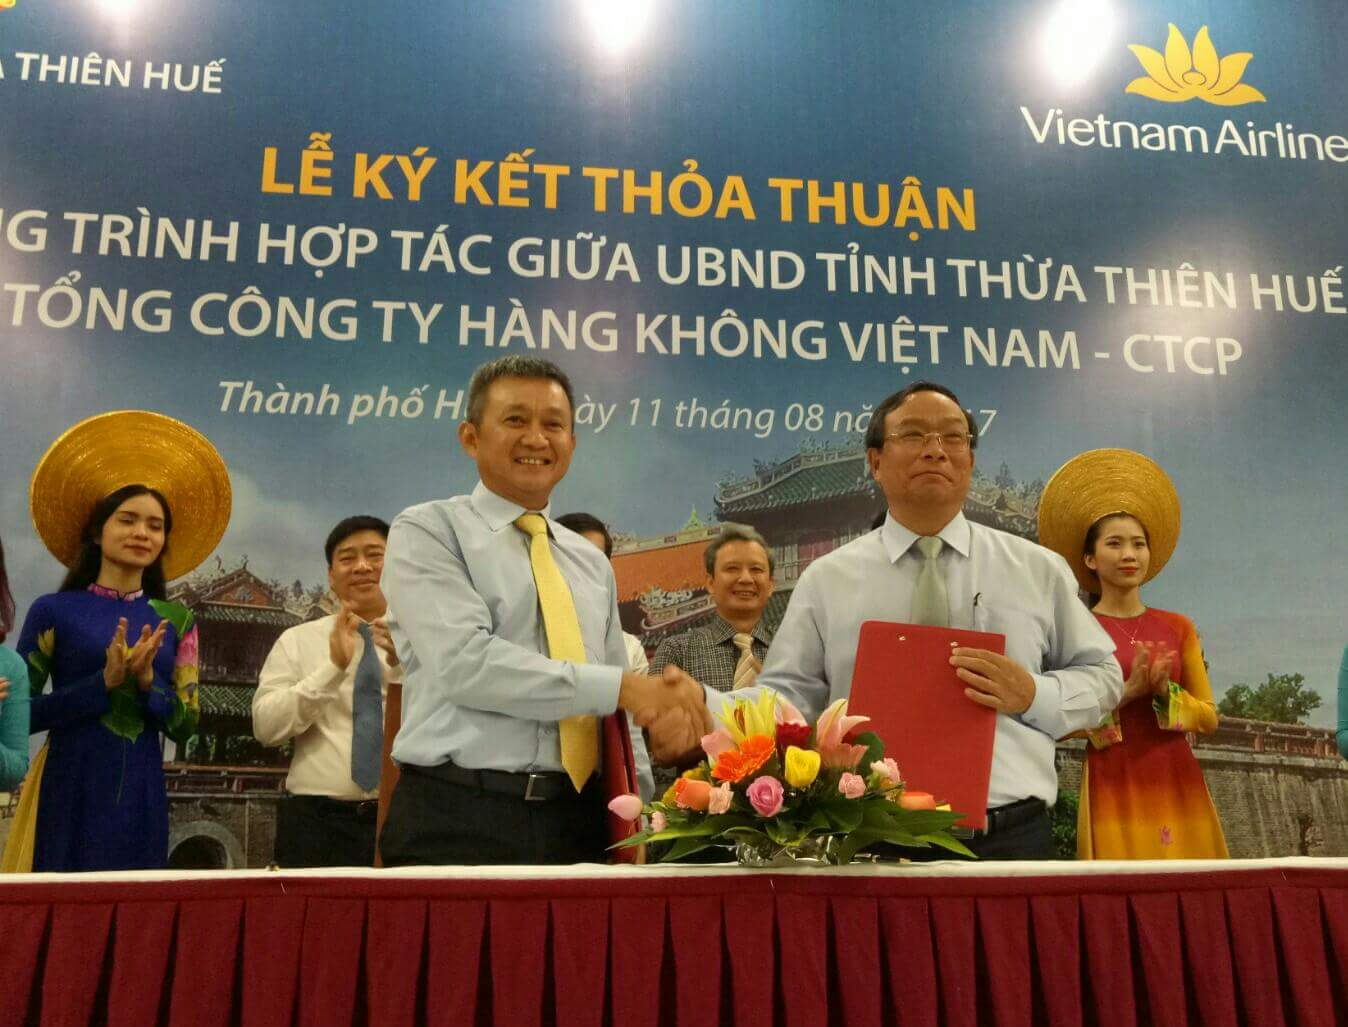 Chủ tịch UBND tỉnh Thừa Thiên Huế Nguyễn Văn Cao (phải ảnh) và ông Dương Trí Thành, Tổng giám đốc Vietnam Airlines ký kết biên bản hợp tác